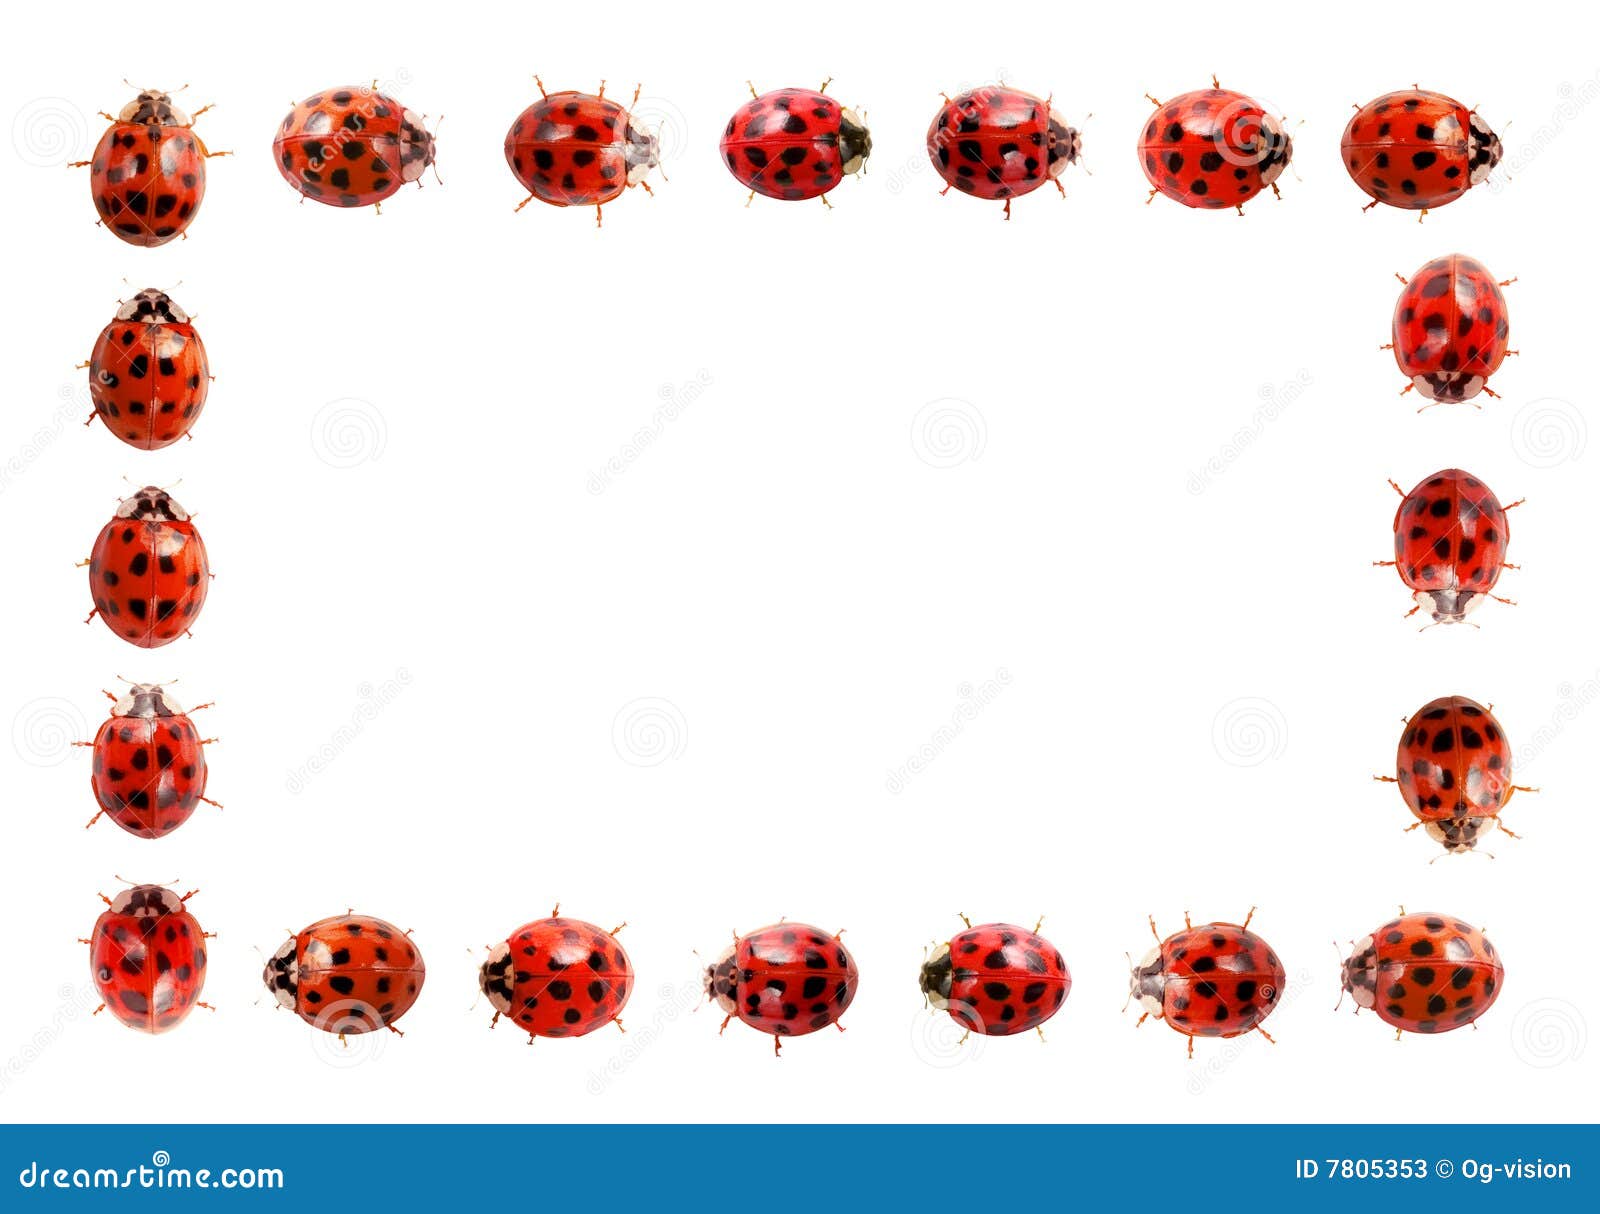 ladybug frame clipart - photo #29